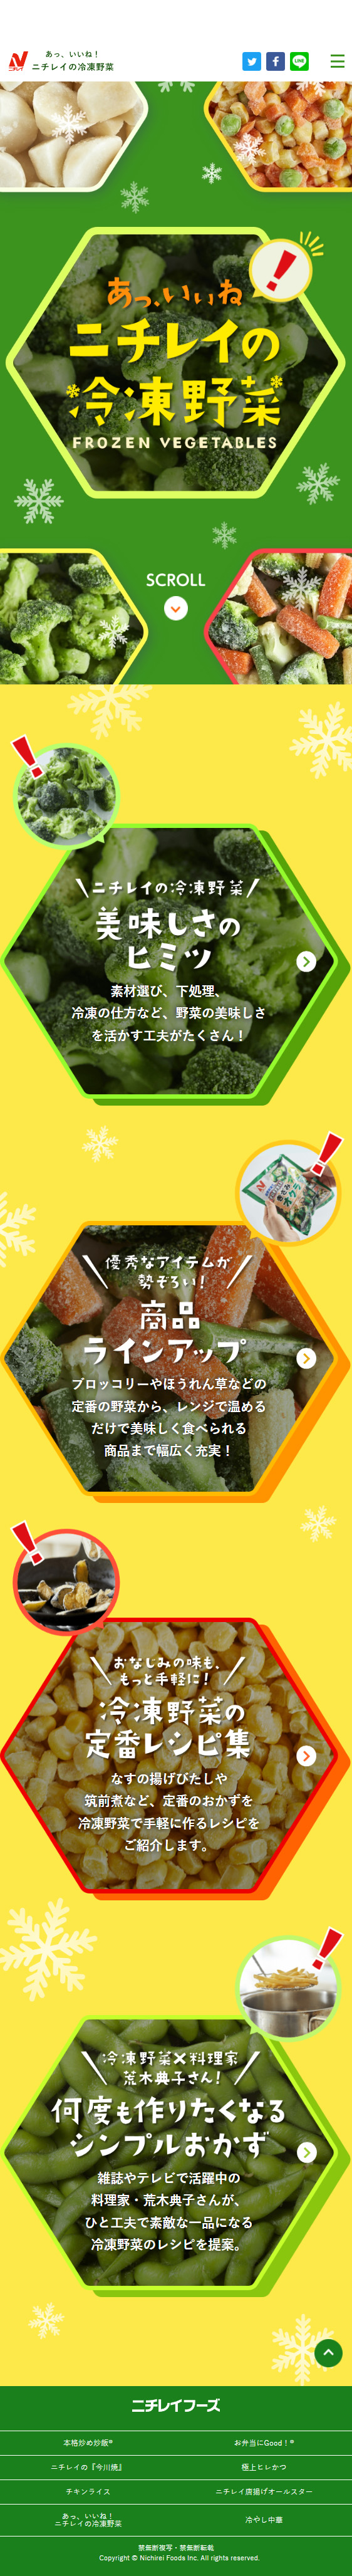 ニチレイの冷凍野菜_sp_1